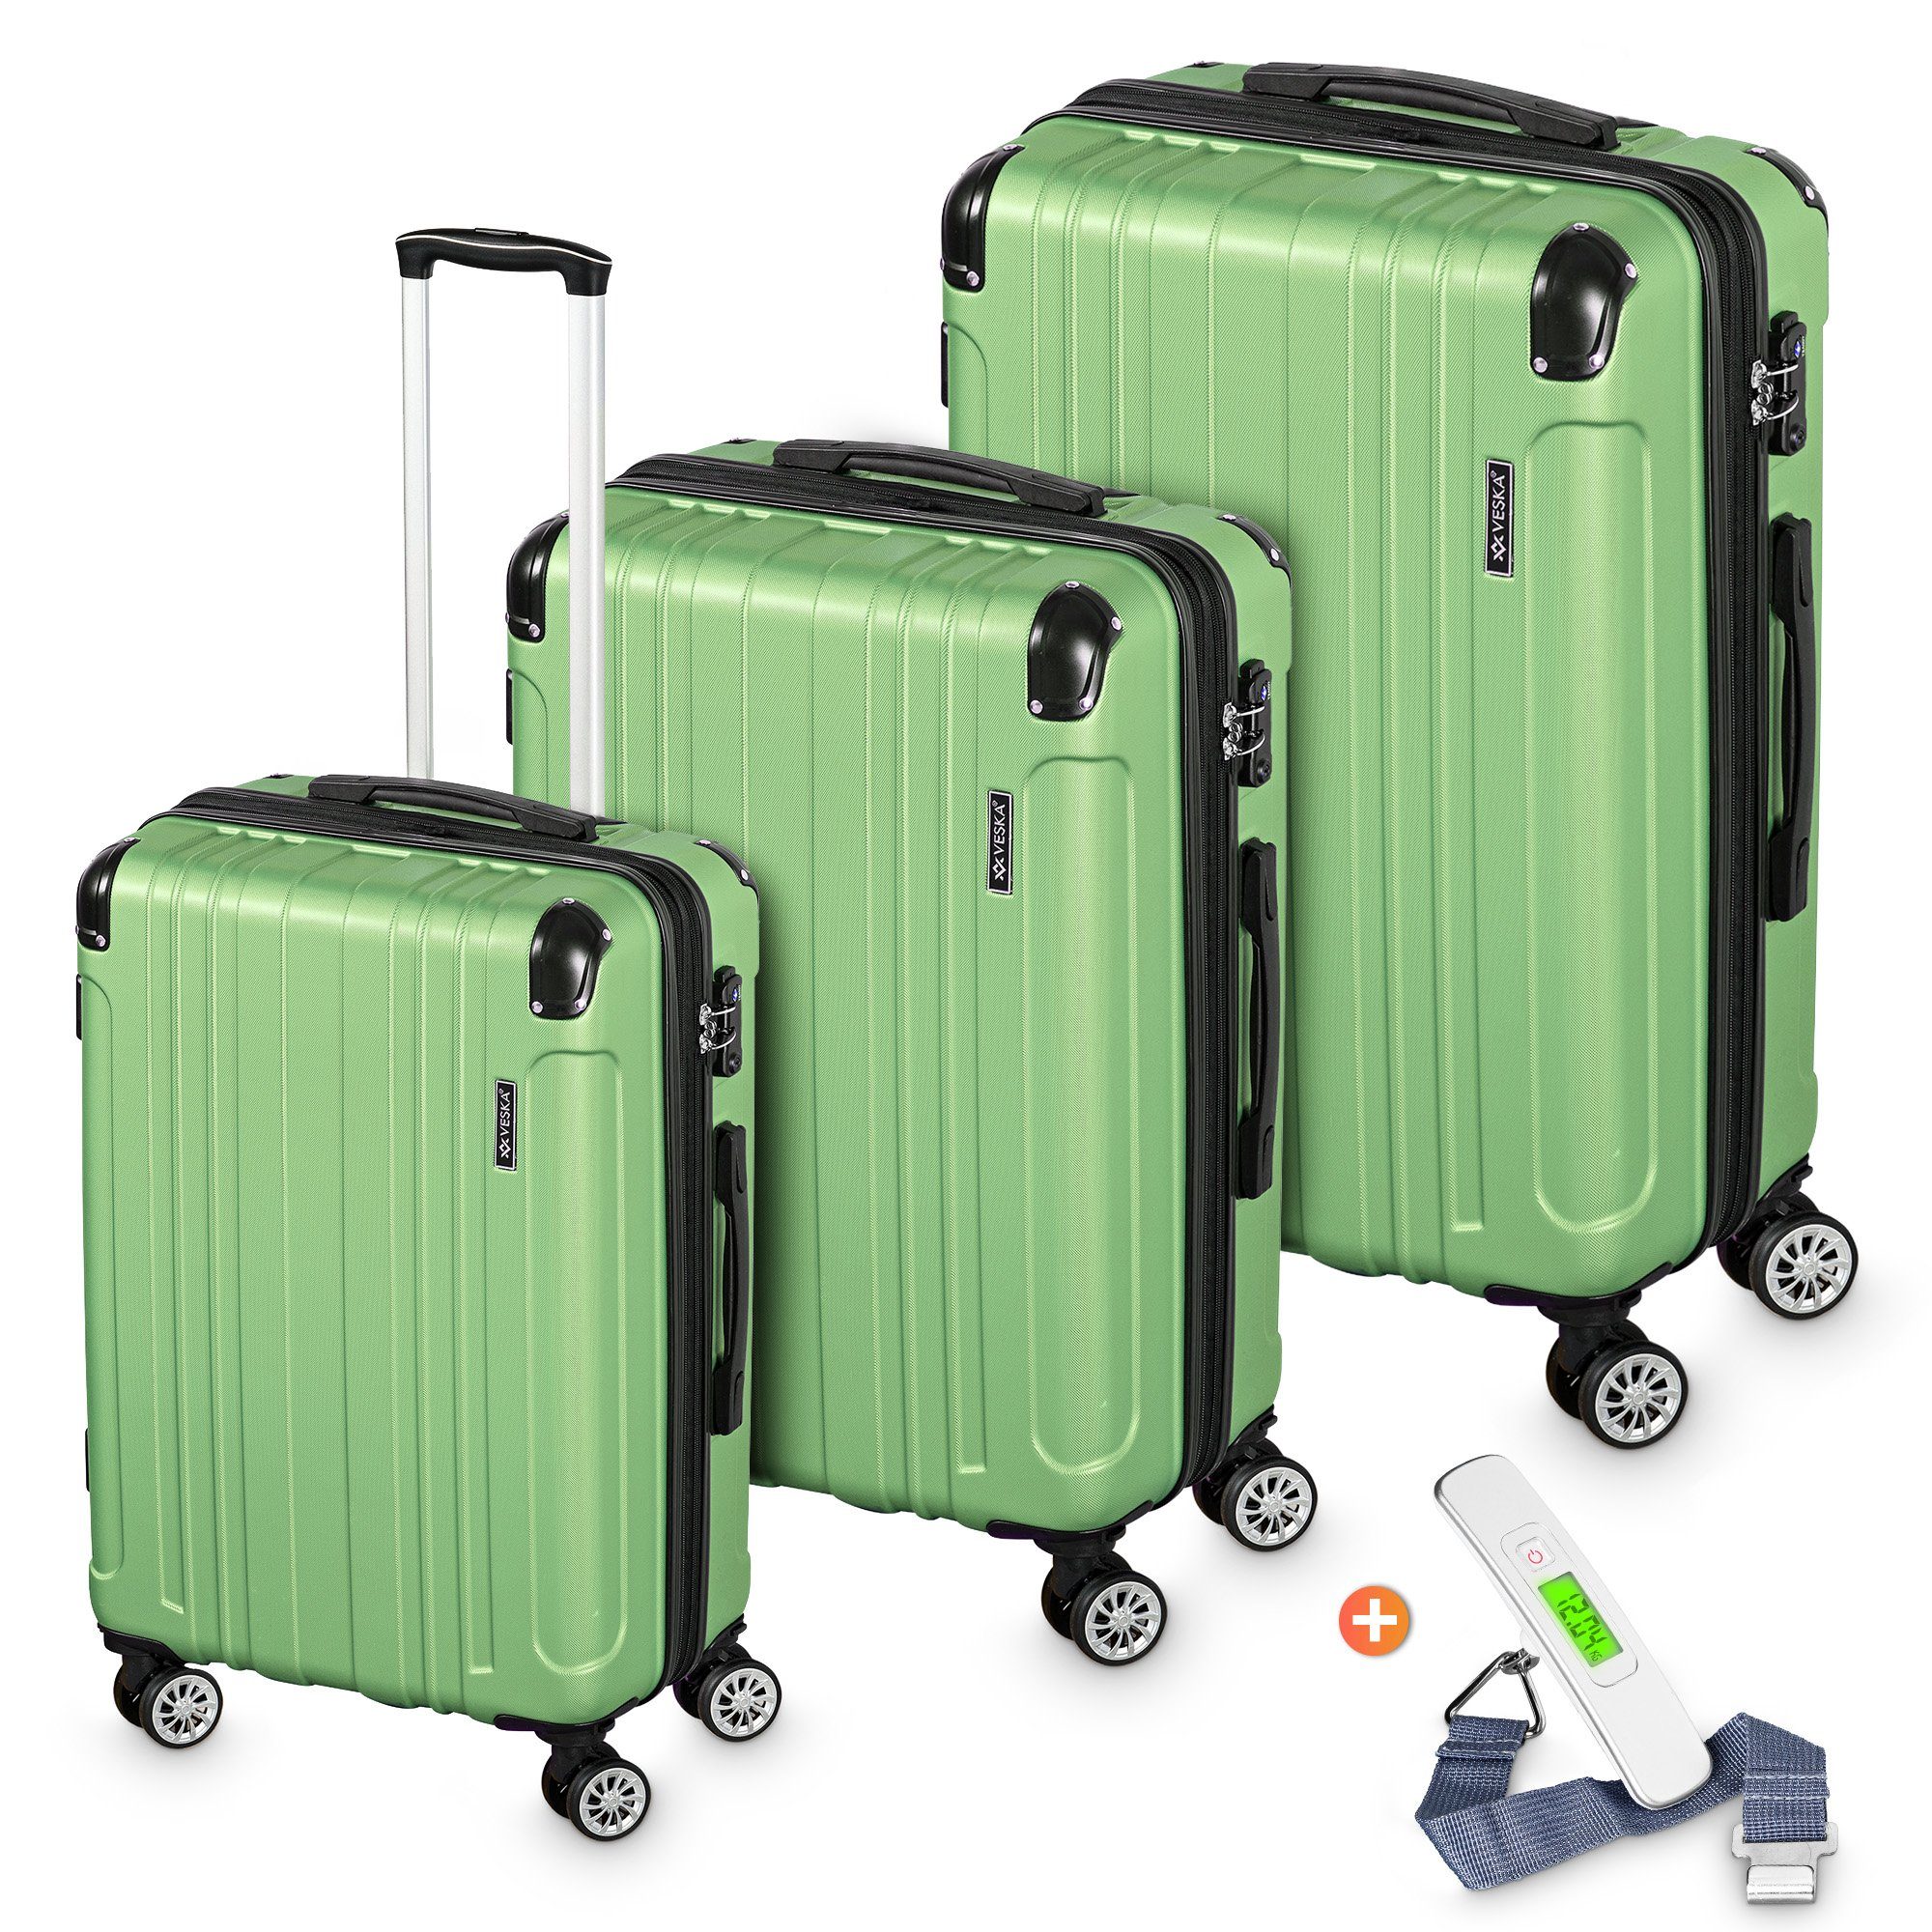 VESKA Trolleyset Hartschalenkoffer Kofferset 3 teilig mit TSA Zahlenschloss 4 Rollen, ABS-Hartschale, Reisekoffer Trolley Rollkoffer Koffer oliv-grün